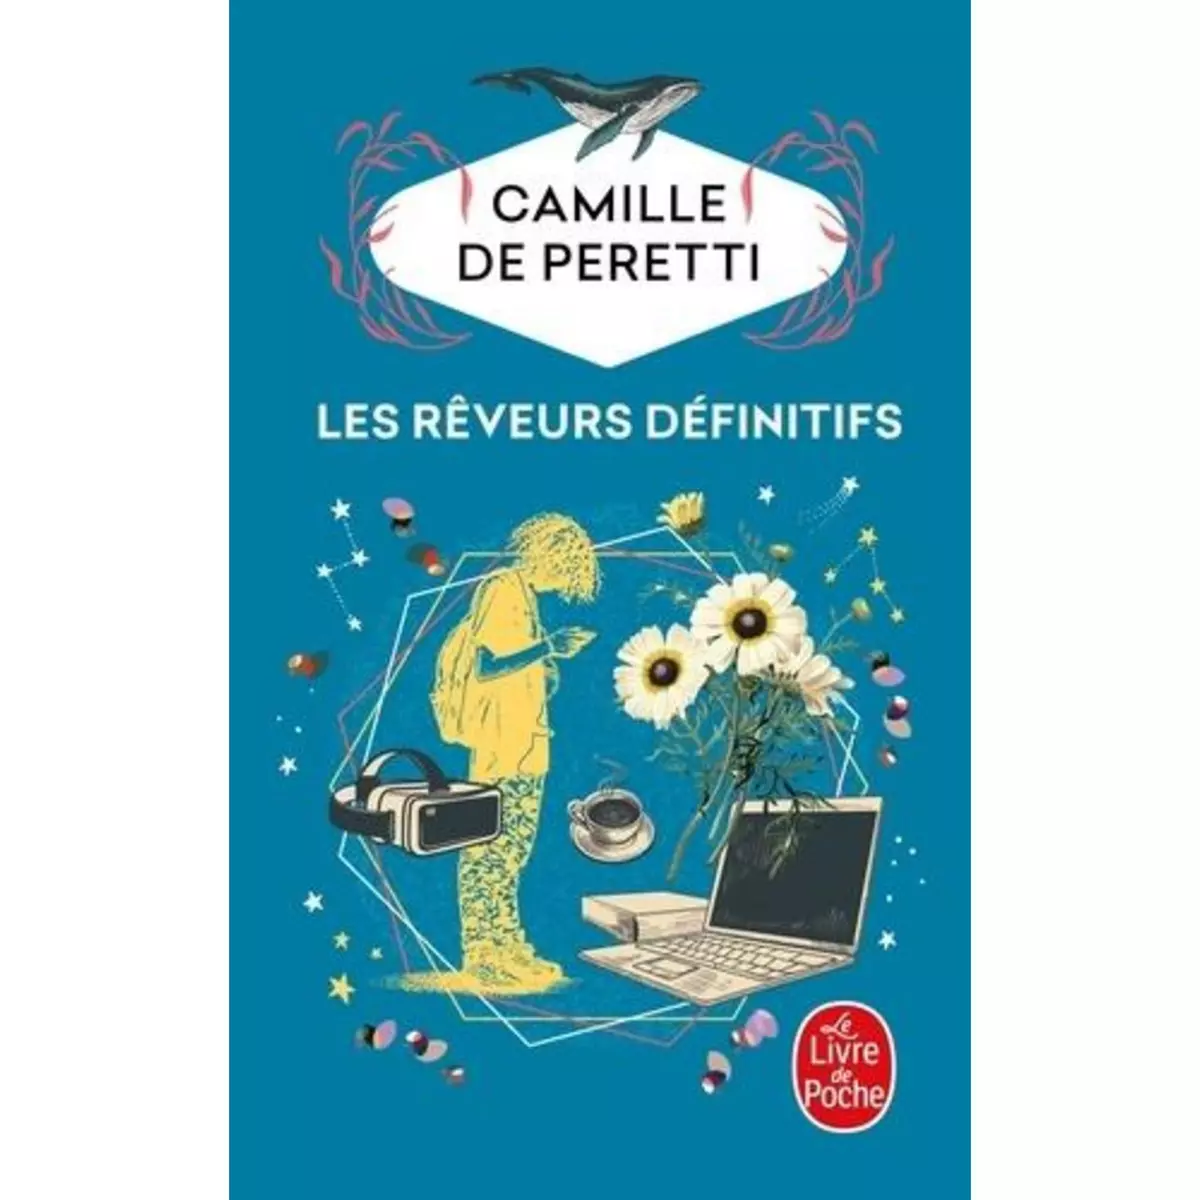  LES REVEURS DEFINITIFS, Peretti Camille de